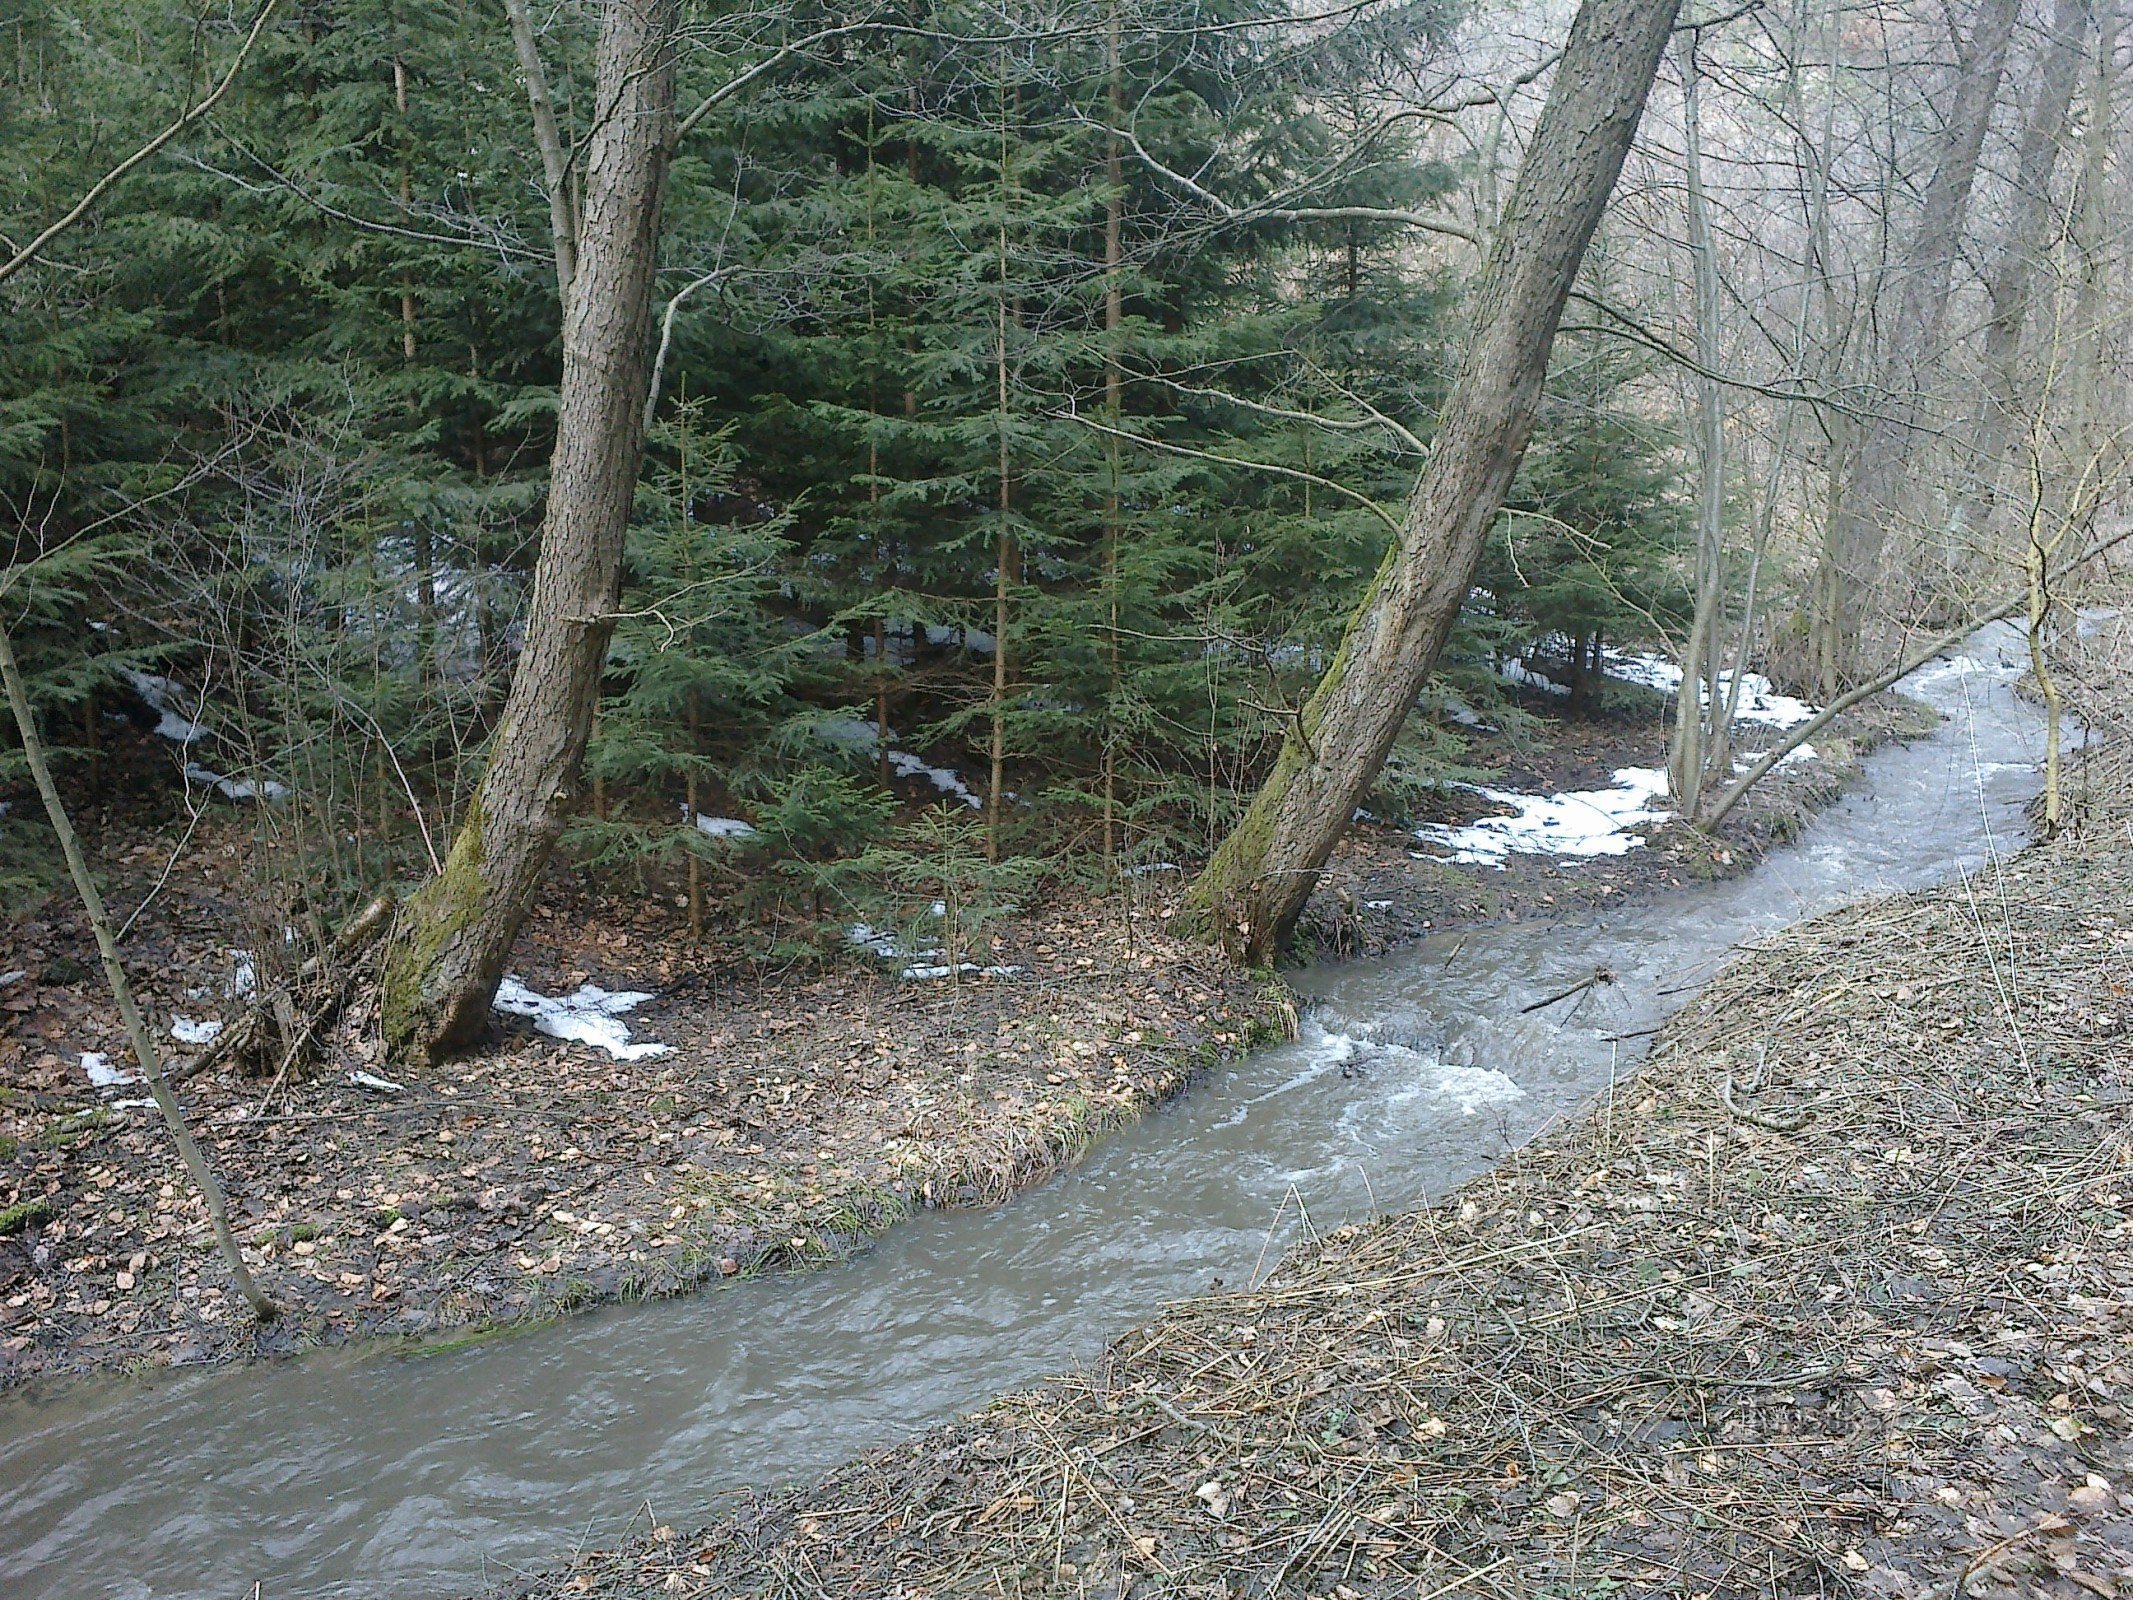 Vallée de Vitovice